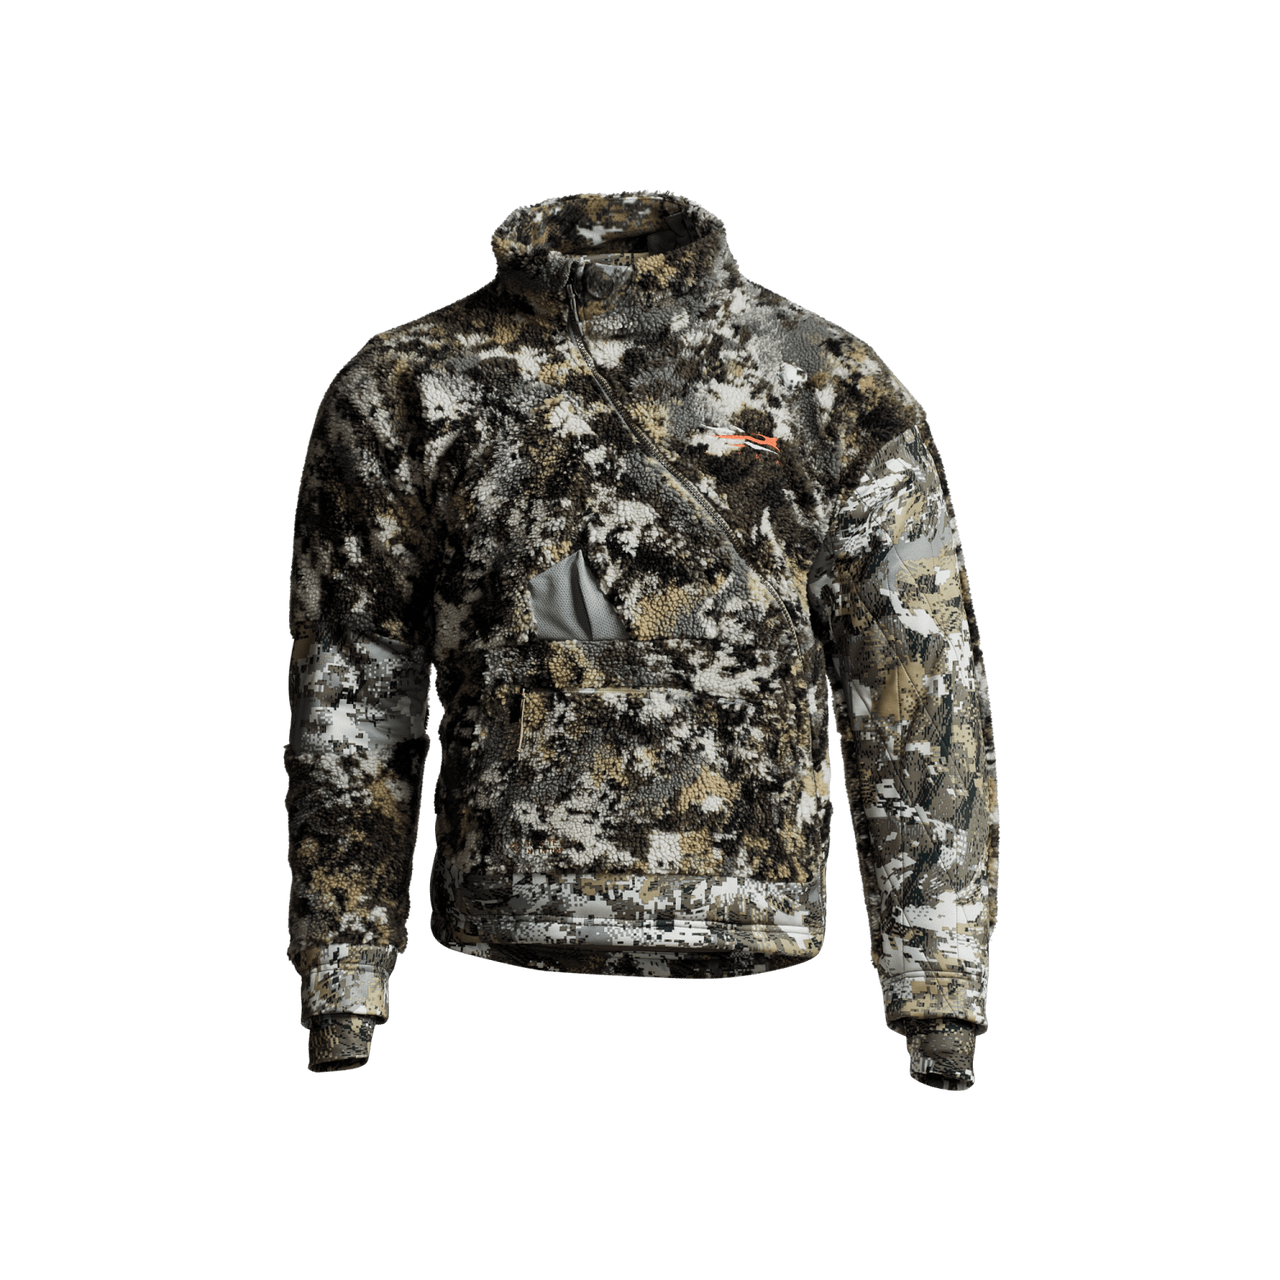 Un manteau de chasse léger et respirant dans des tons de marron et de vert, doté d'une capuche, de plusieurs poches et d'un ourlet ajustable.